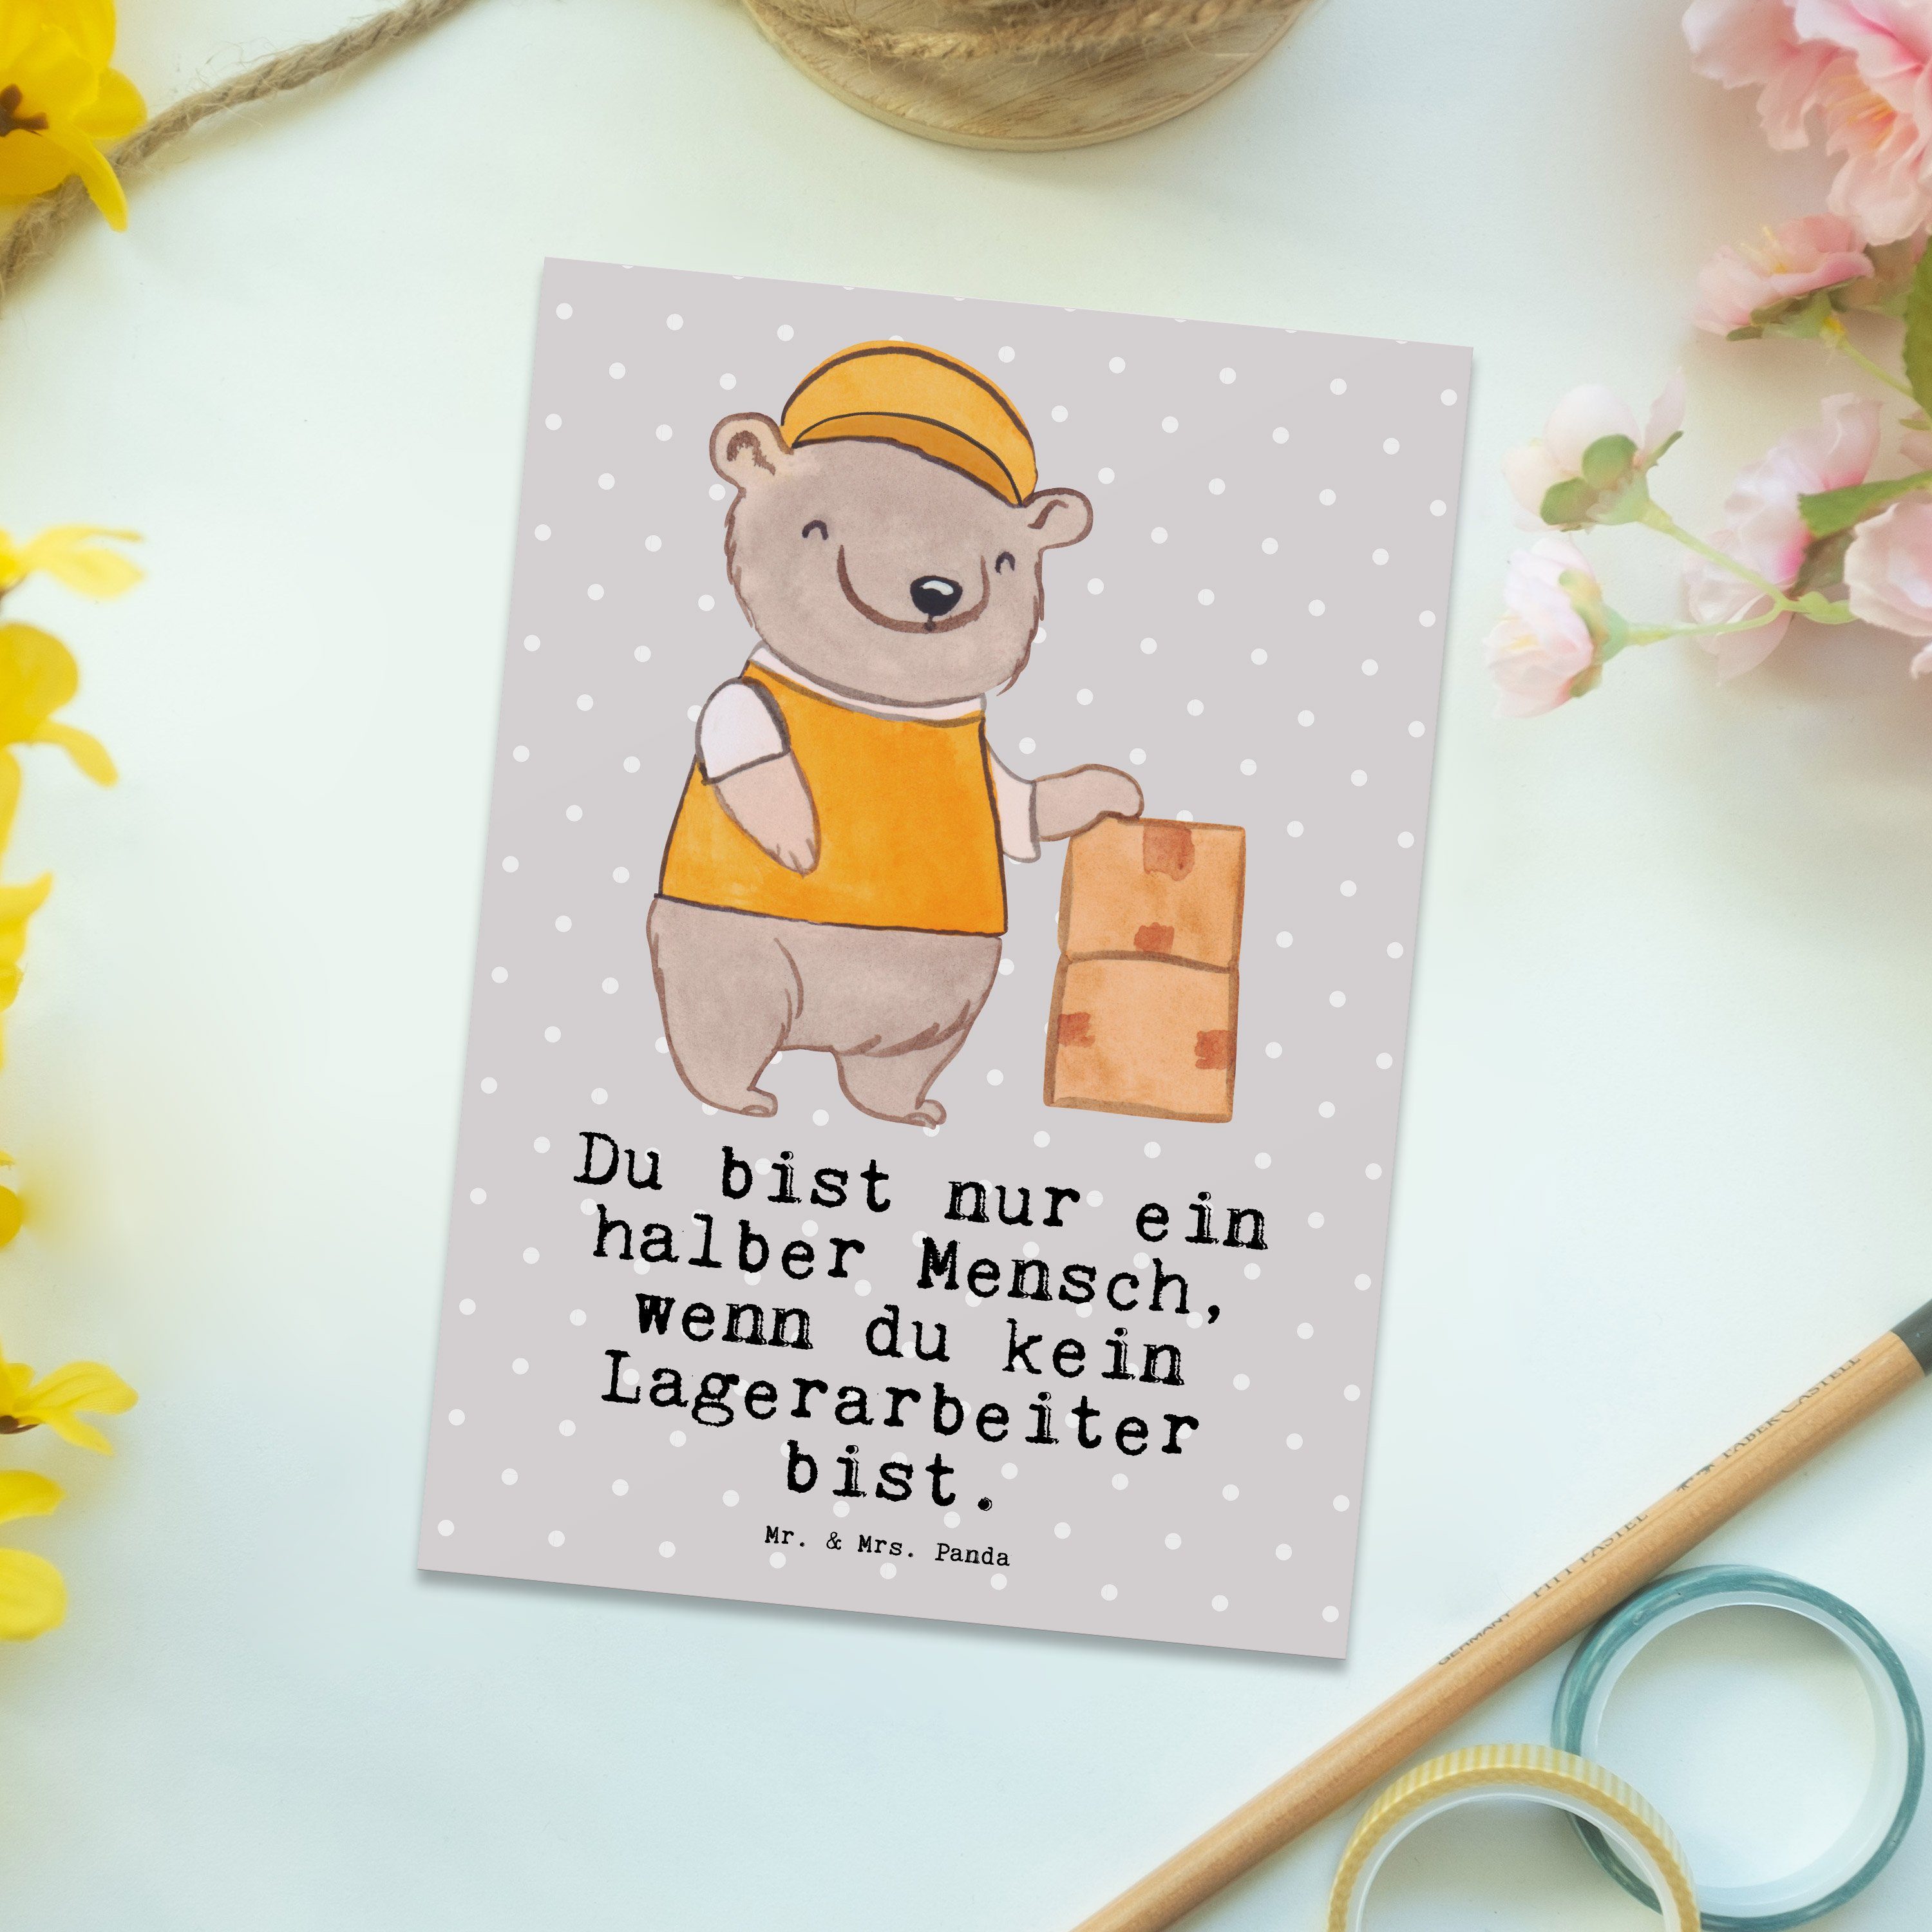 Grau Herz Geschenk, & Mrs. Kollege, Mr. - mit Geschenkka Panda Pastell Postkarte - Lagerarbeiter